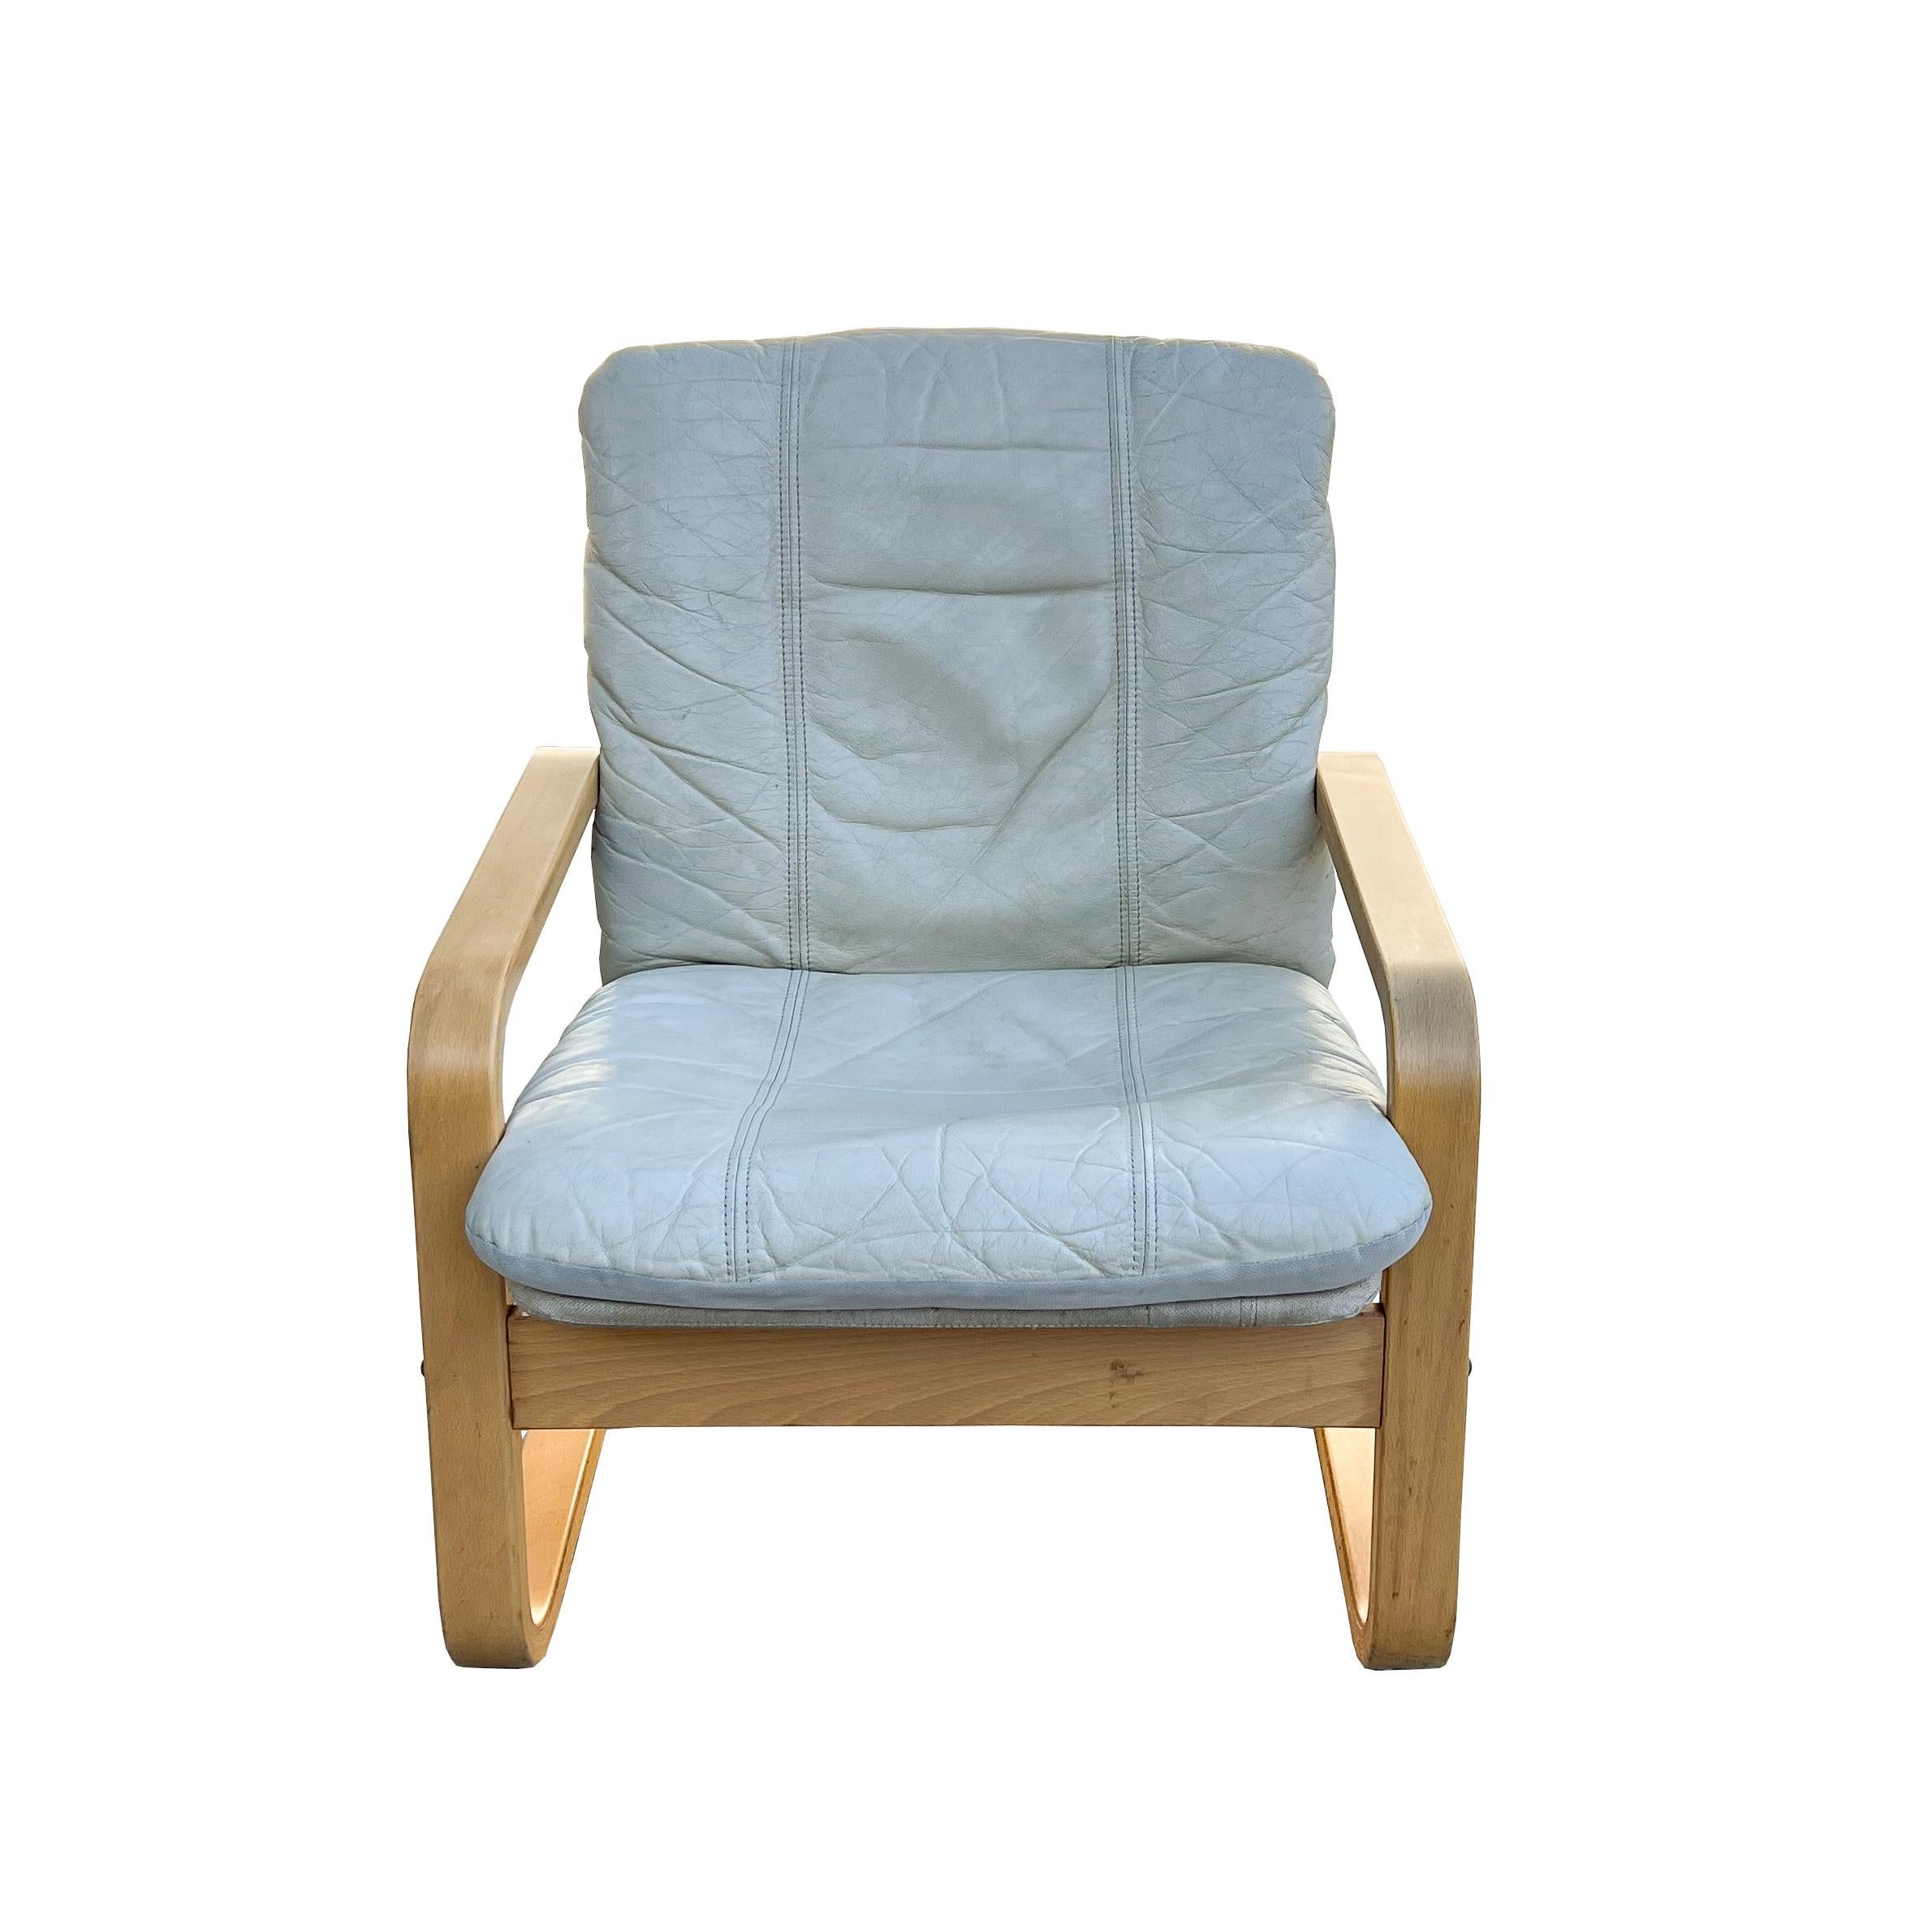 Erleben Sie die Verschmelzung von Stil und Komfort mit unseren Vintage-Loungesesseln aus Bugholz. Mit ihrem unverwechselbaren Freischwingerdesign bieten diese Stühle eine bemerkenswerte Sitzgelegenheit, die jeden Wohnbereich perfekt ergänzt.

Jeder